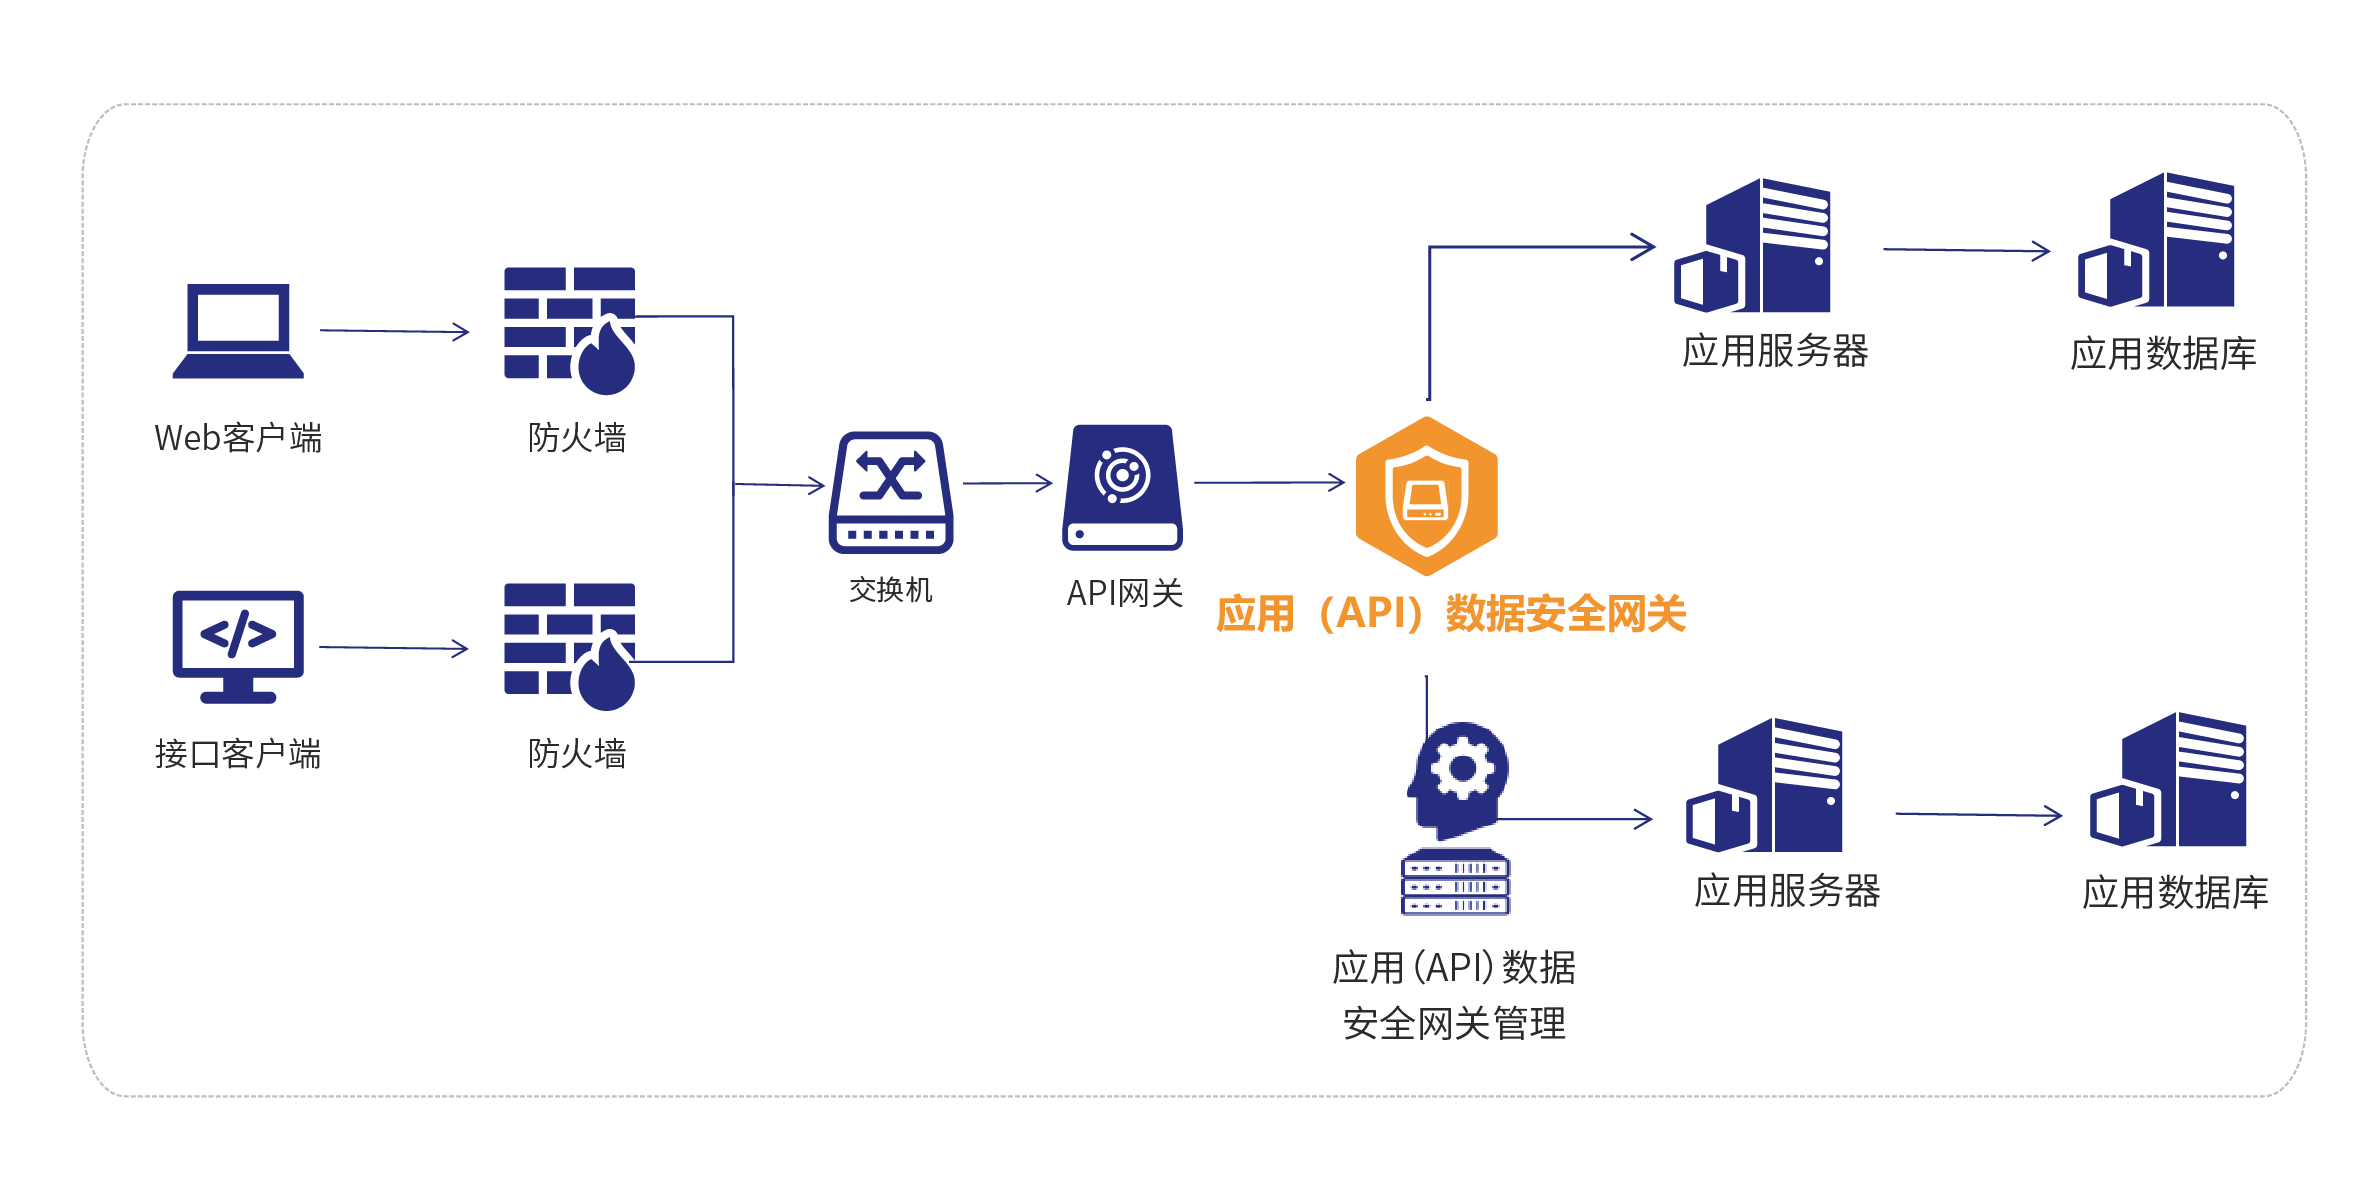 0811_4应用（API）数据安全网关-产品部署图.png